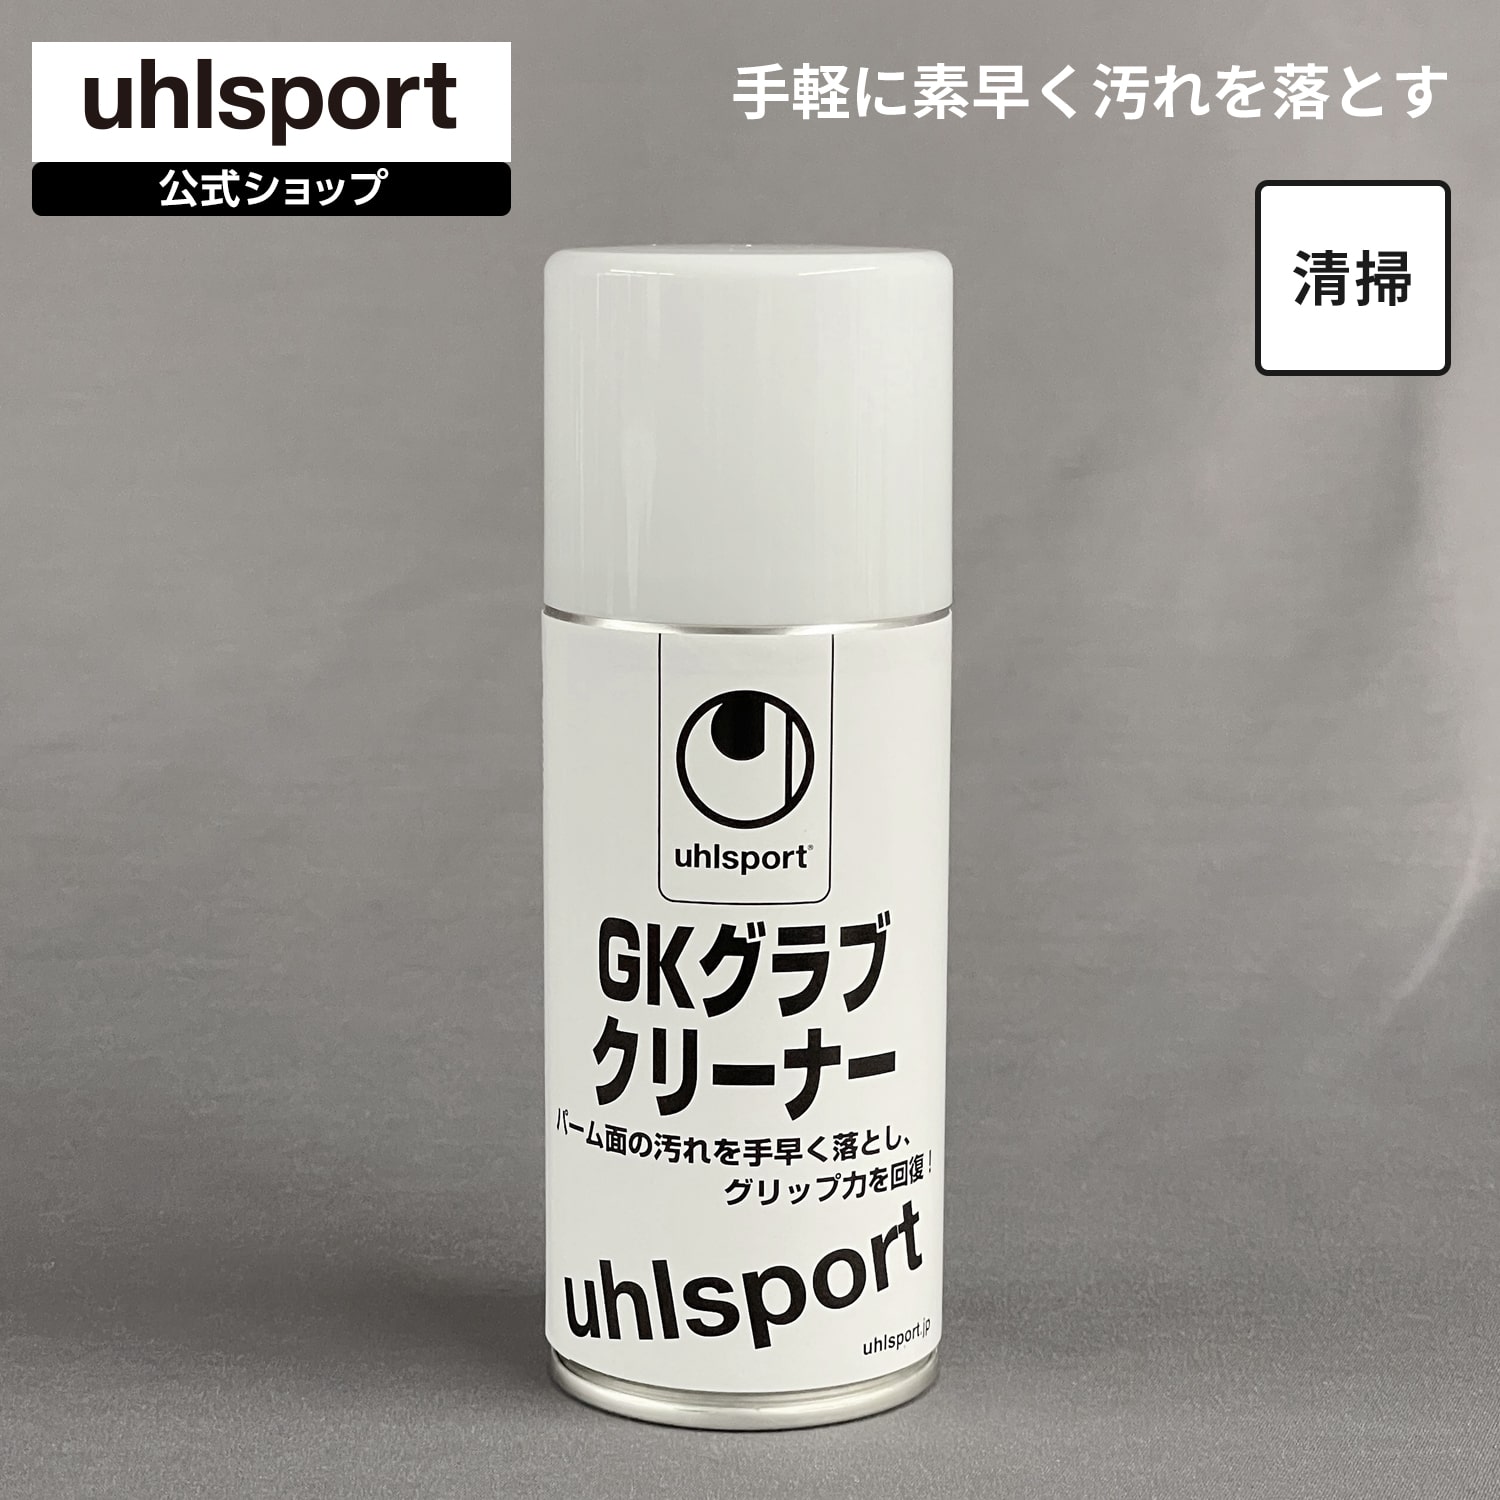 【公式】 uhlsport ( ウールシュポルト ) | G